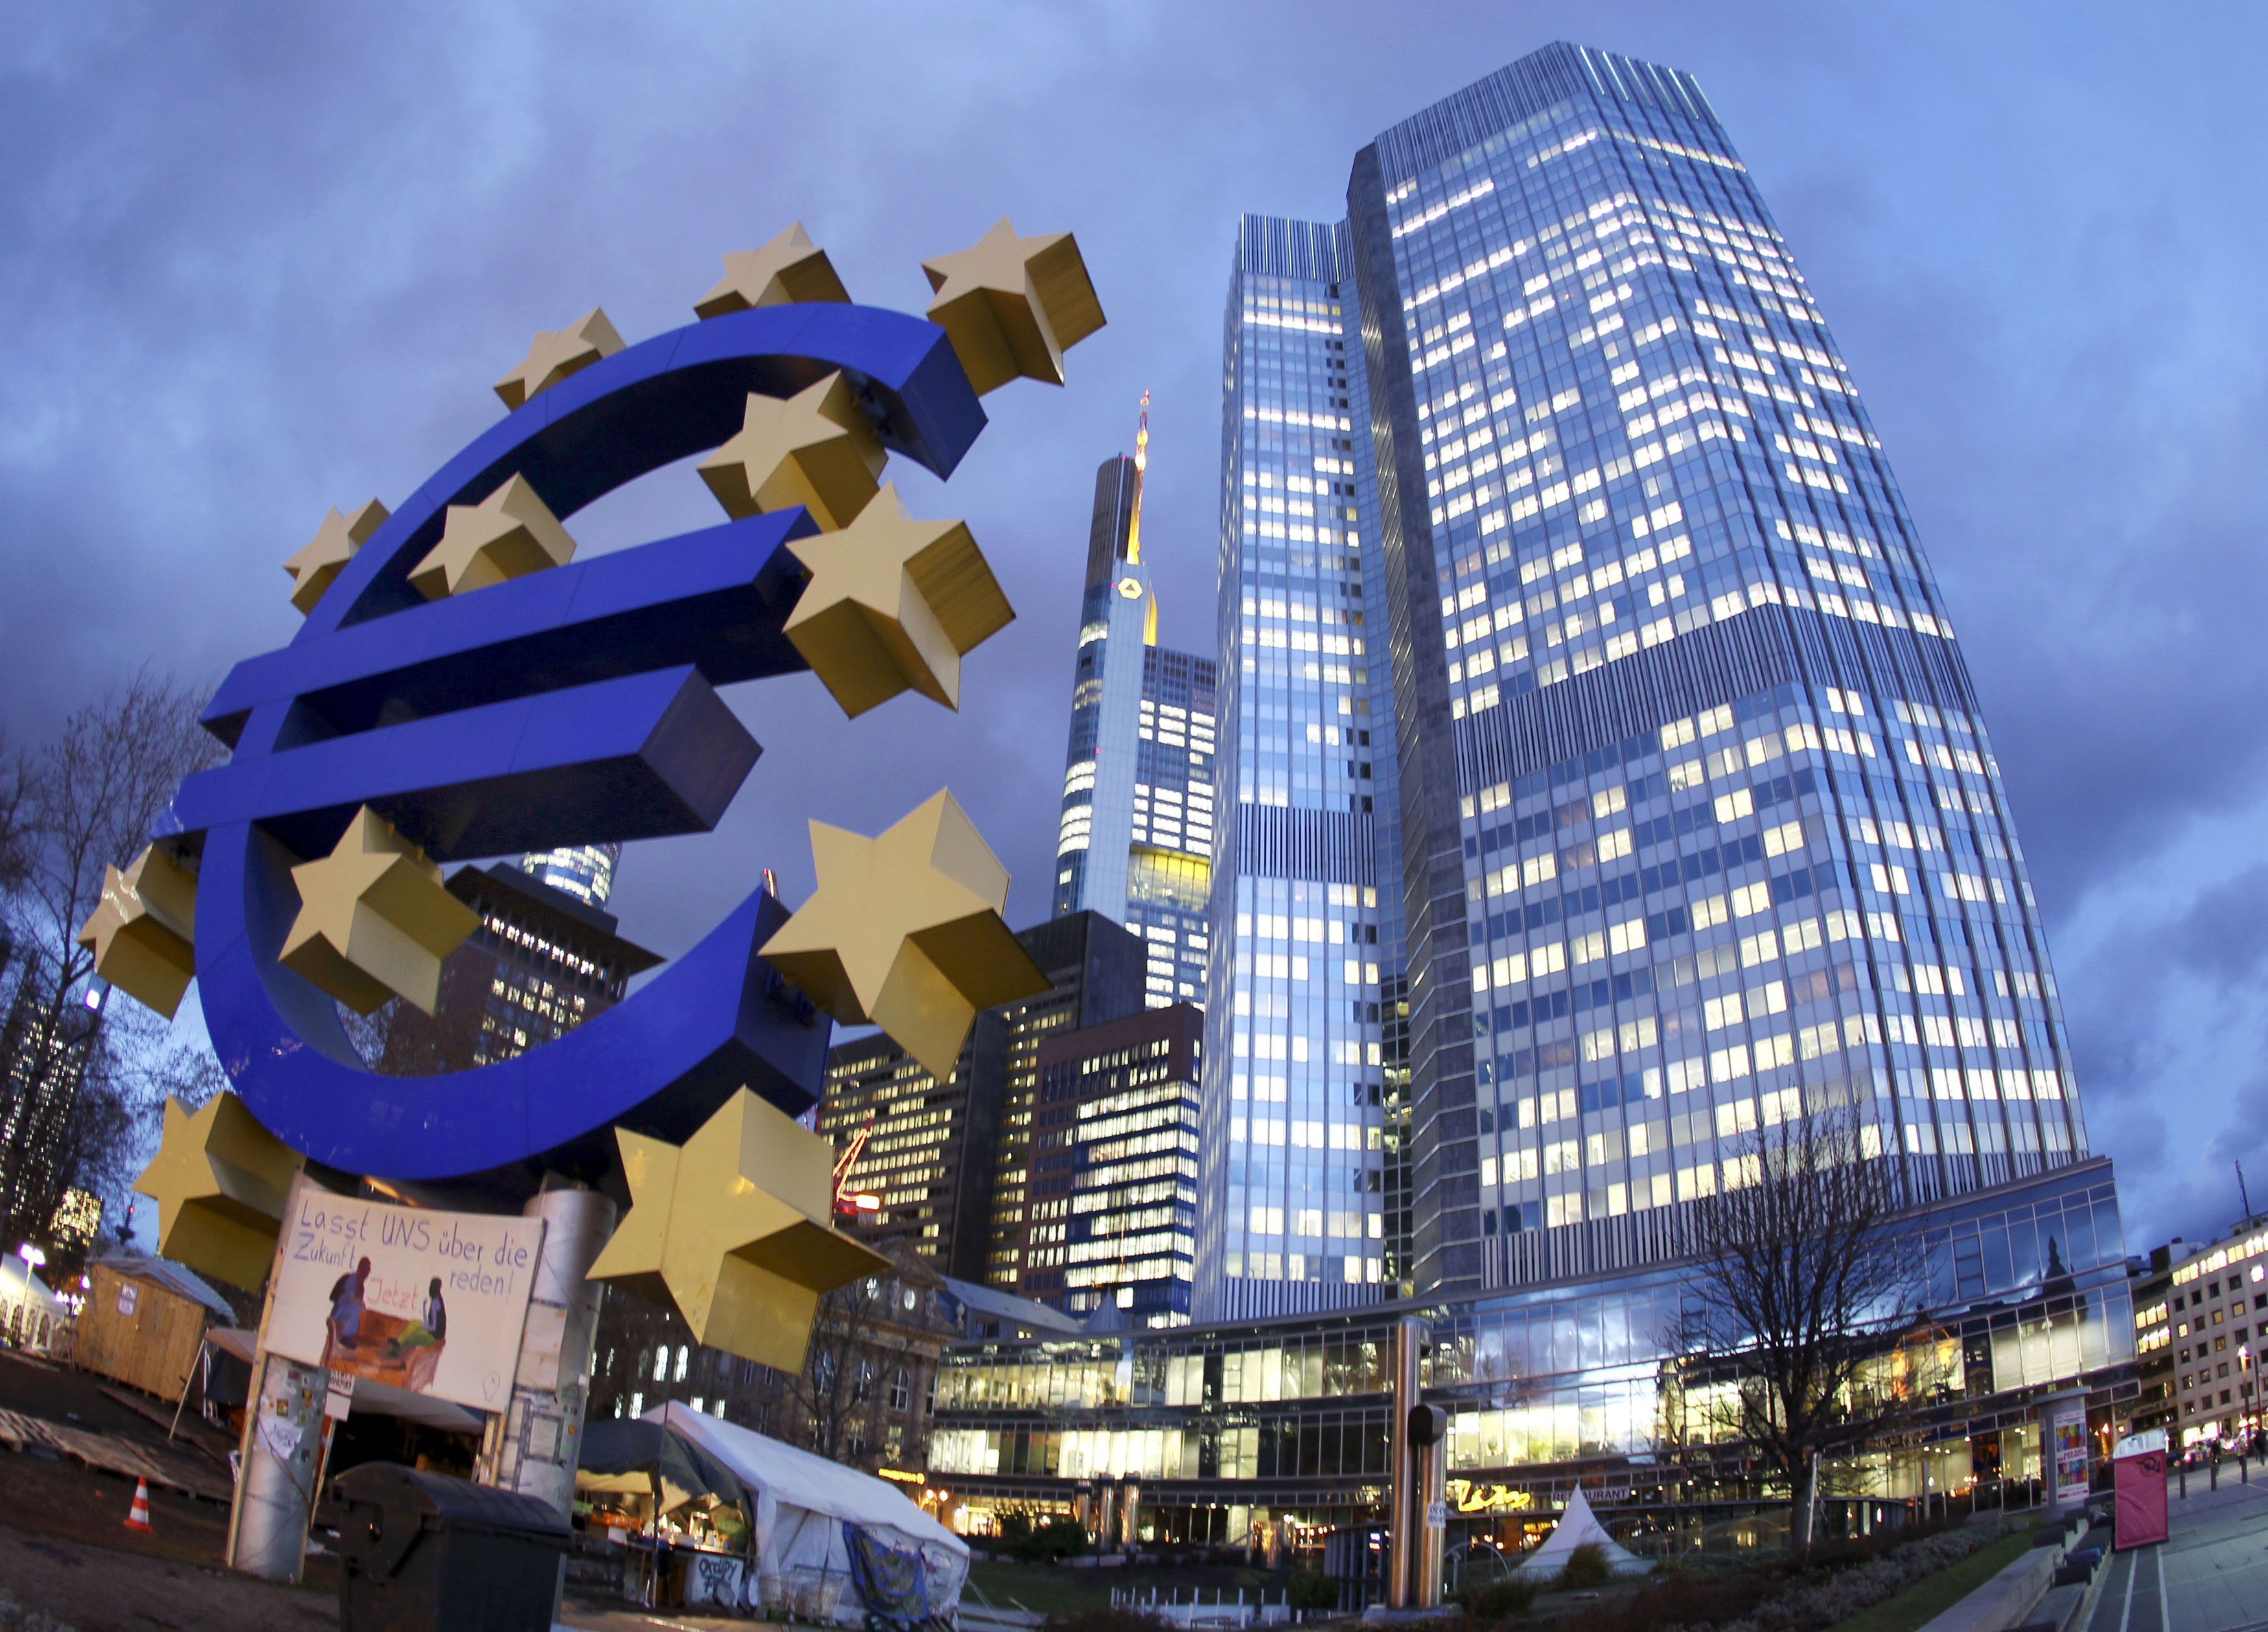 Οι πολιτικές δηλώσεις κάνουν κακό στην οικονομία, λέει η ΕΚΤ